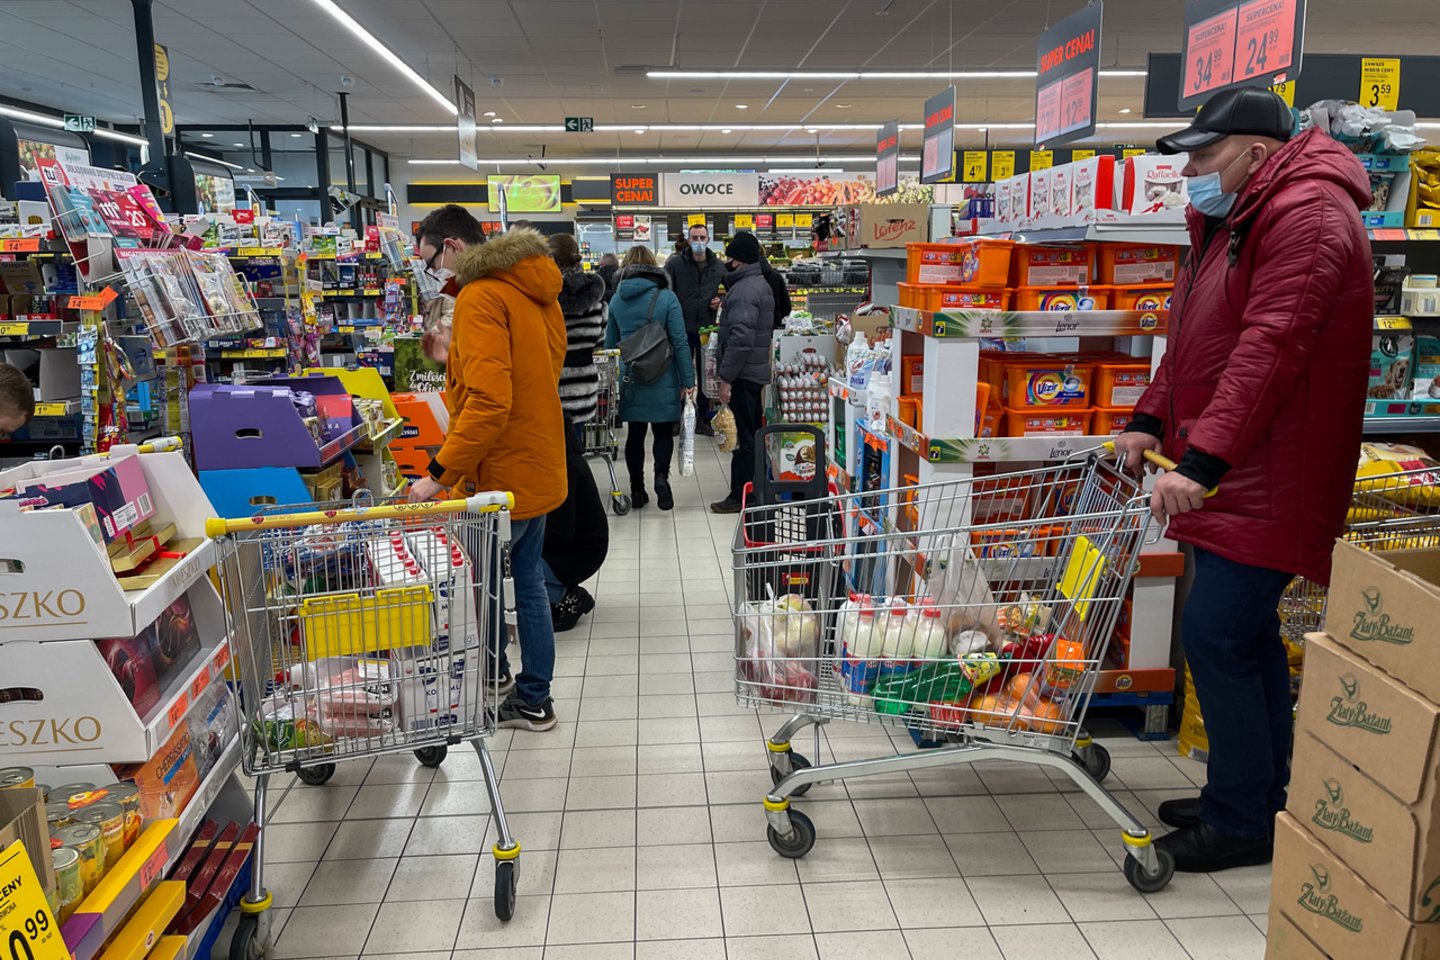 Lenkijoje panaikinus pridėtinės vertės mokestį (PVM) maisto produktams ir pritaikius lengvatą kurui ir energijai, infliacija šalyje sumažėjo 2 procentiniais punktais.<br>G.Bitvinsko nuotr.